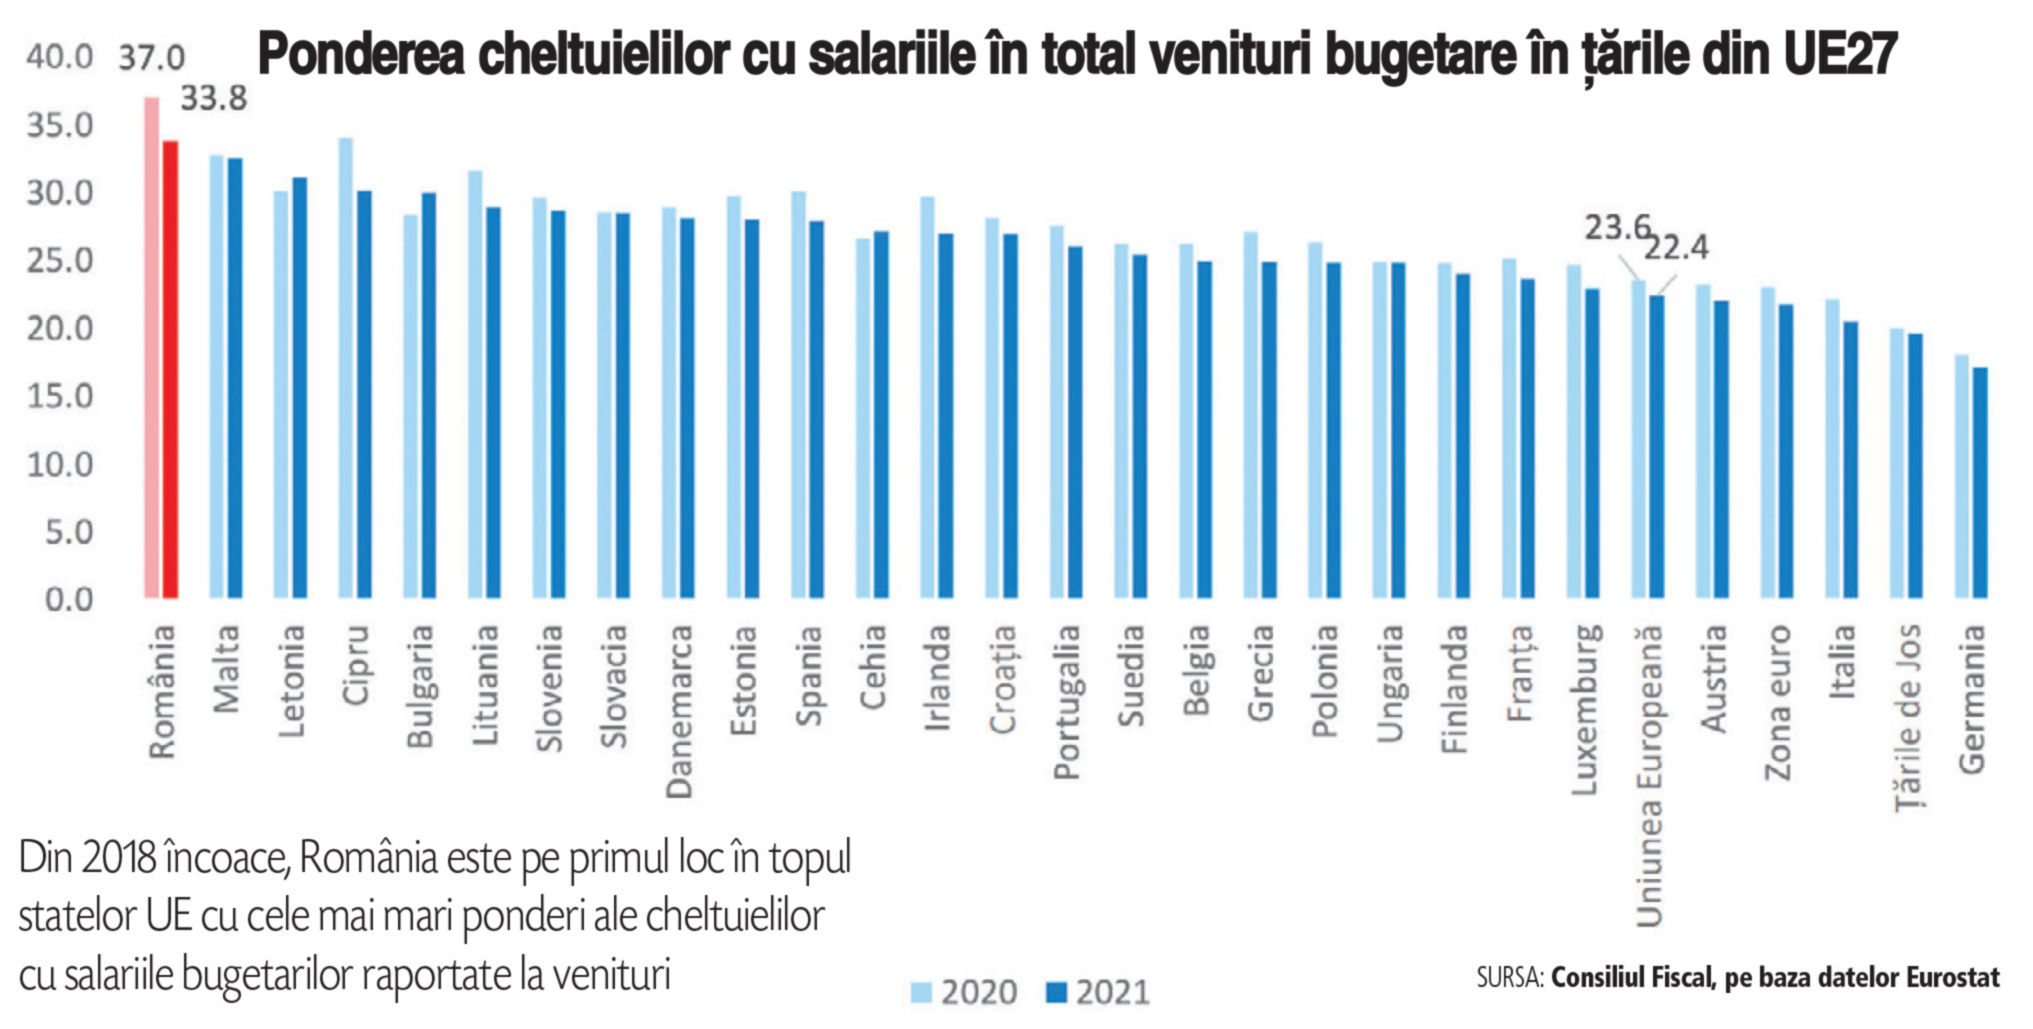 Consiliul Fiscal: Salariile bugetarilor reprezintă 37% din totalul veniturilor la buget, cel mai ridicat nivel din UE. În 2009, România era pe locul zece în topul statelor UE în ceea ce priveşte ponderea cheltuielilor cu salariile în total venituri bugetare